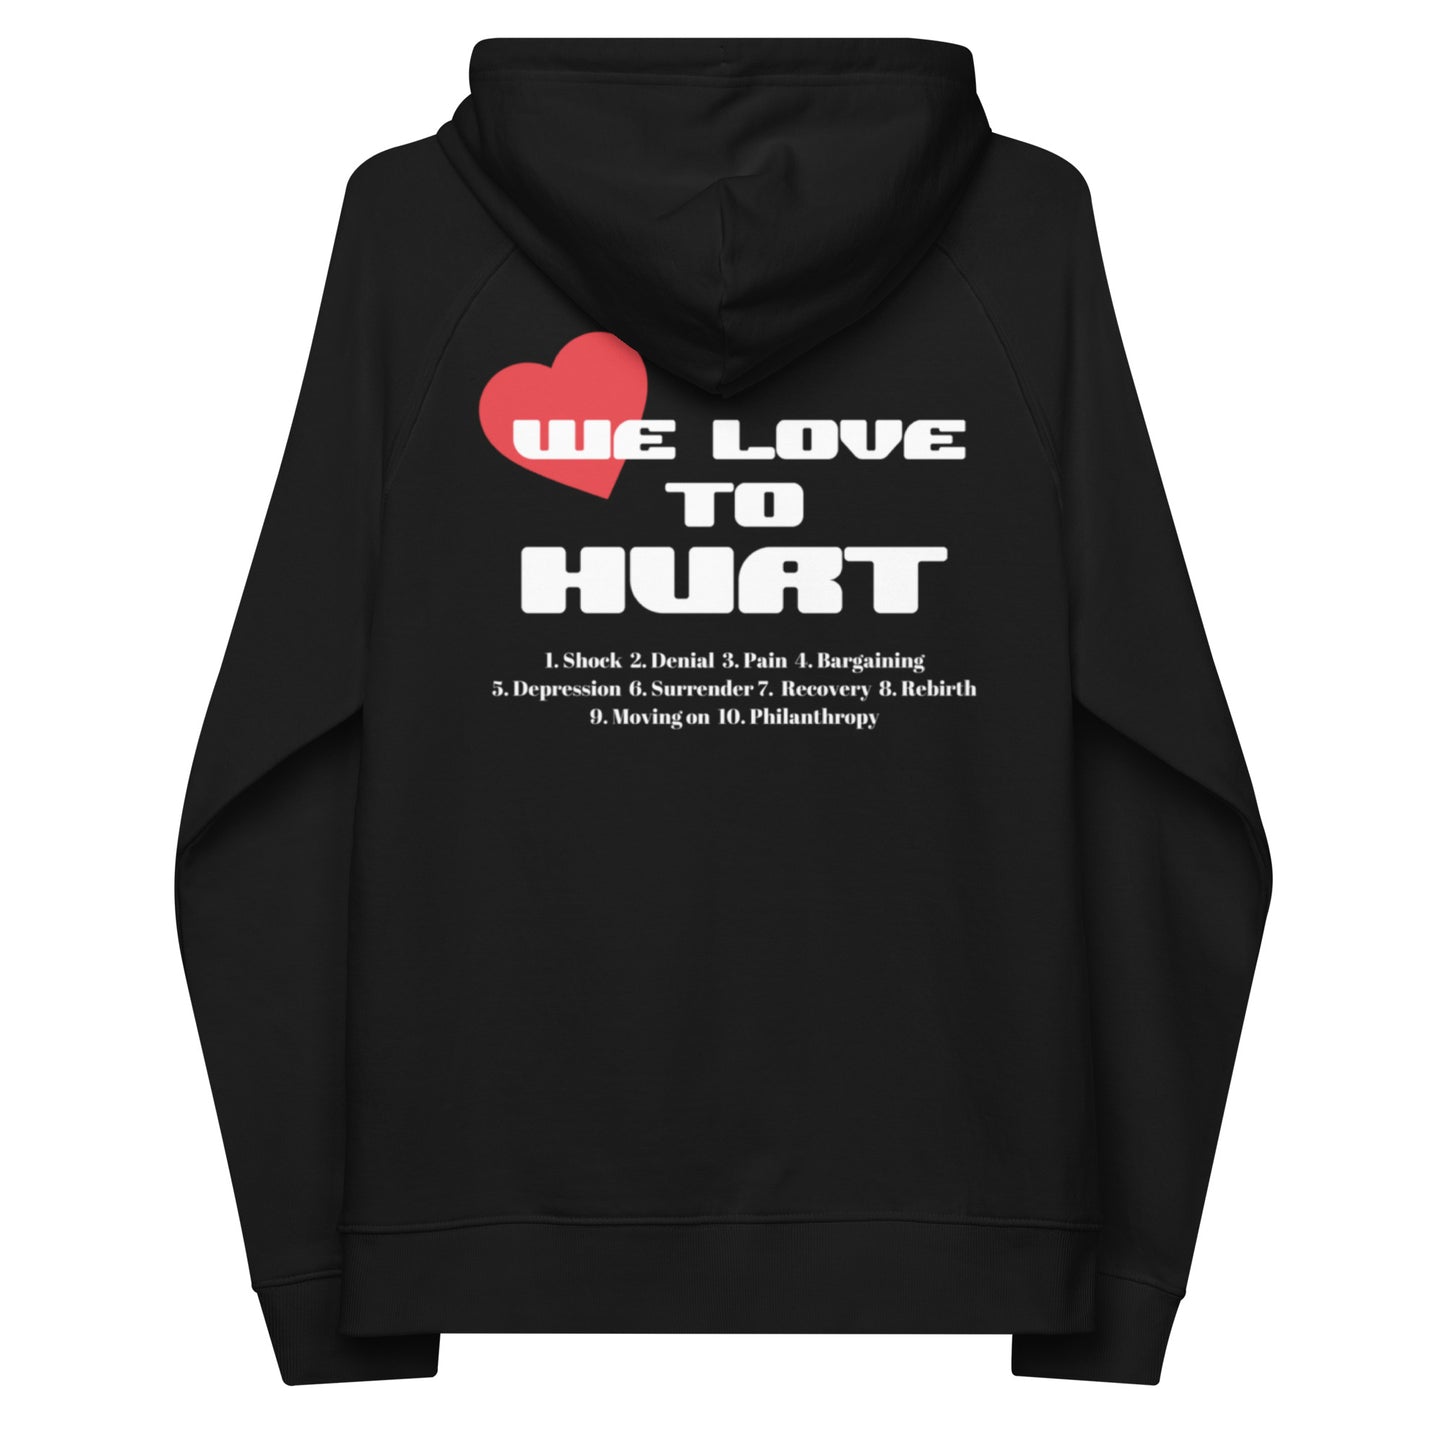 We Love To Hurt raglan hoodie